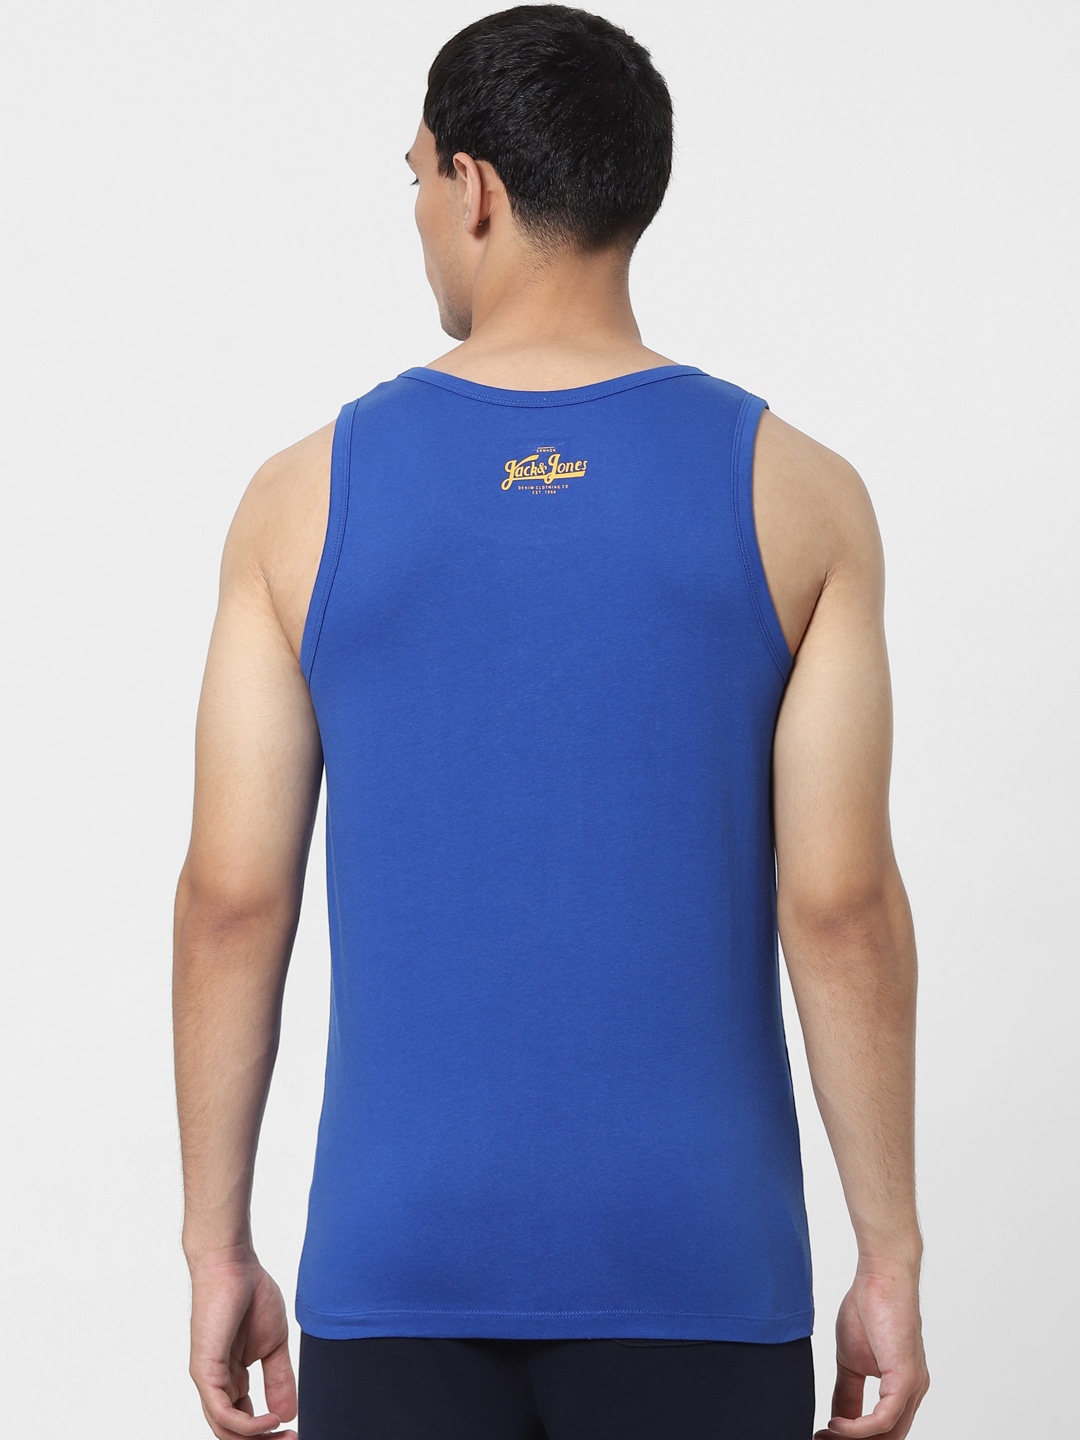 Clothing Innerwear Vests | Jack & Jones Men Blue Printed Innerwear Vest 1413571001 - TL86461